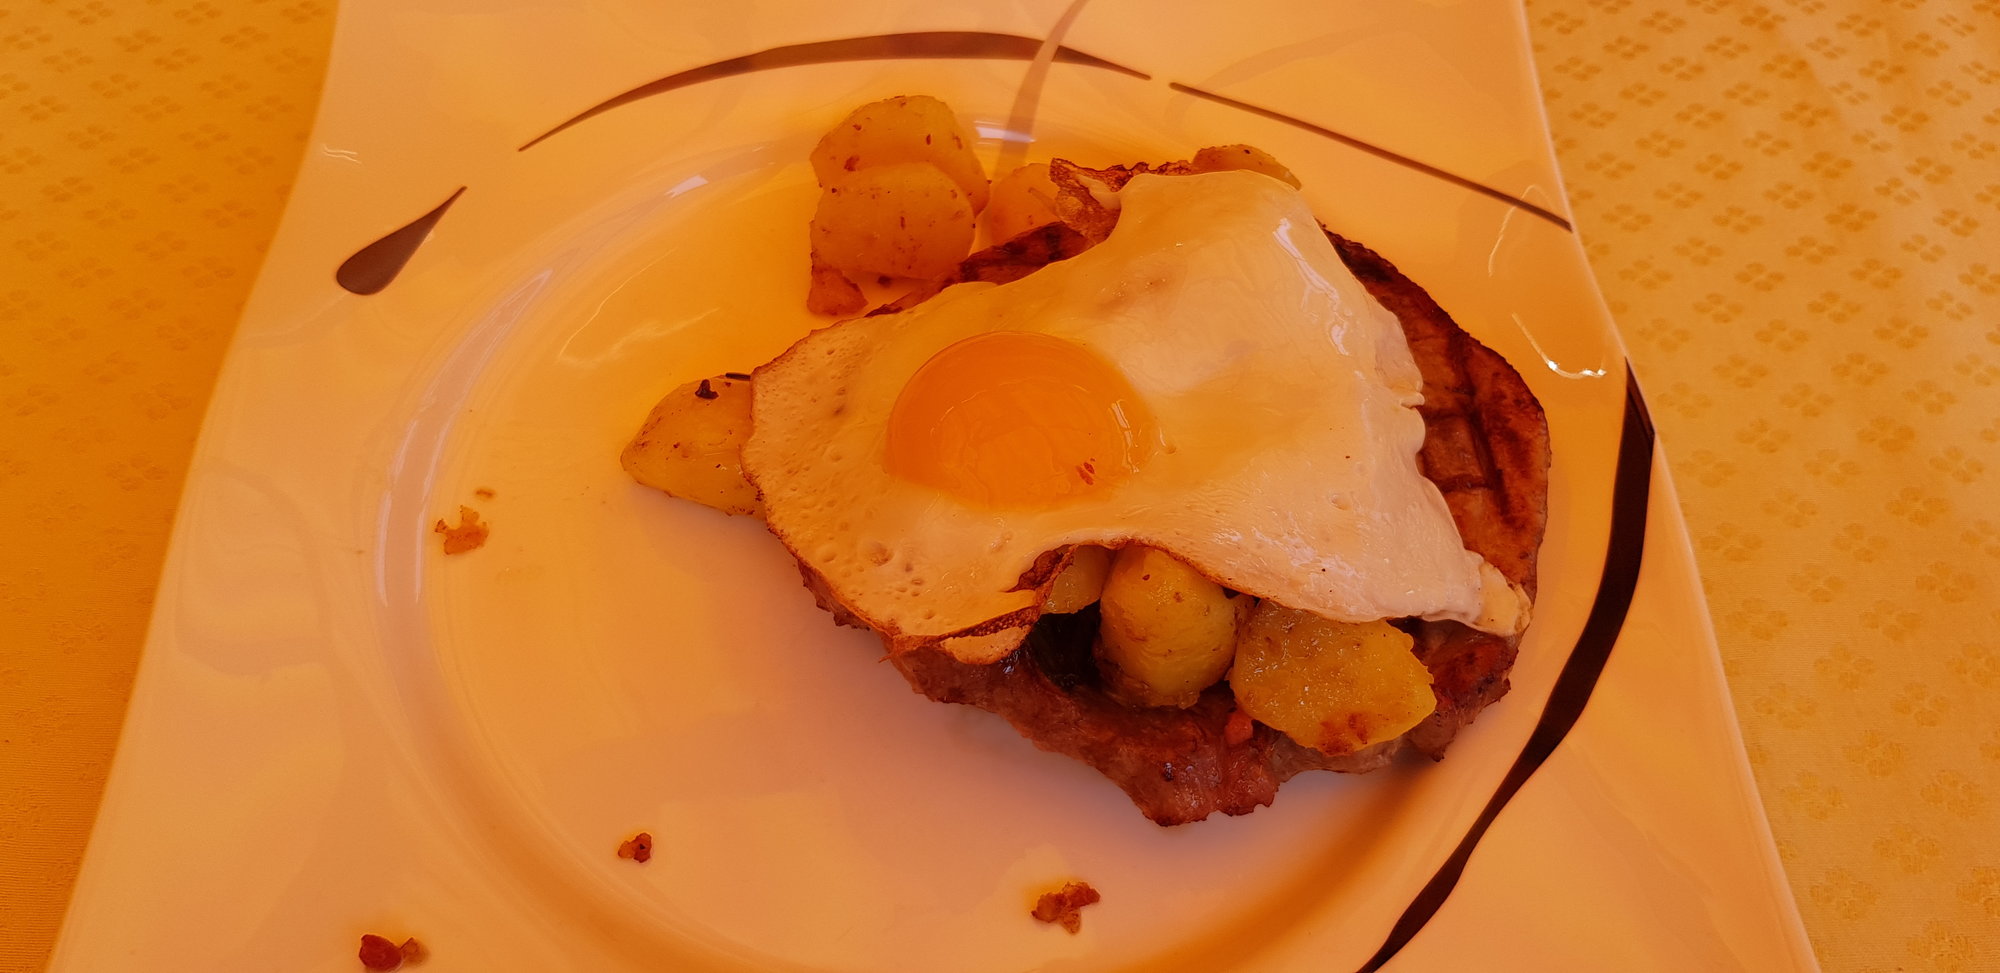 Bratkartoffeln, Schnitzel, Spiegelei | Grillforum und BBQ - www ...